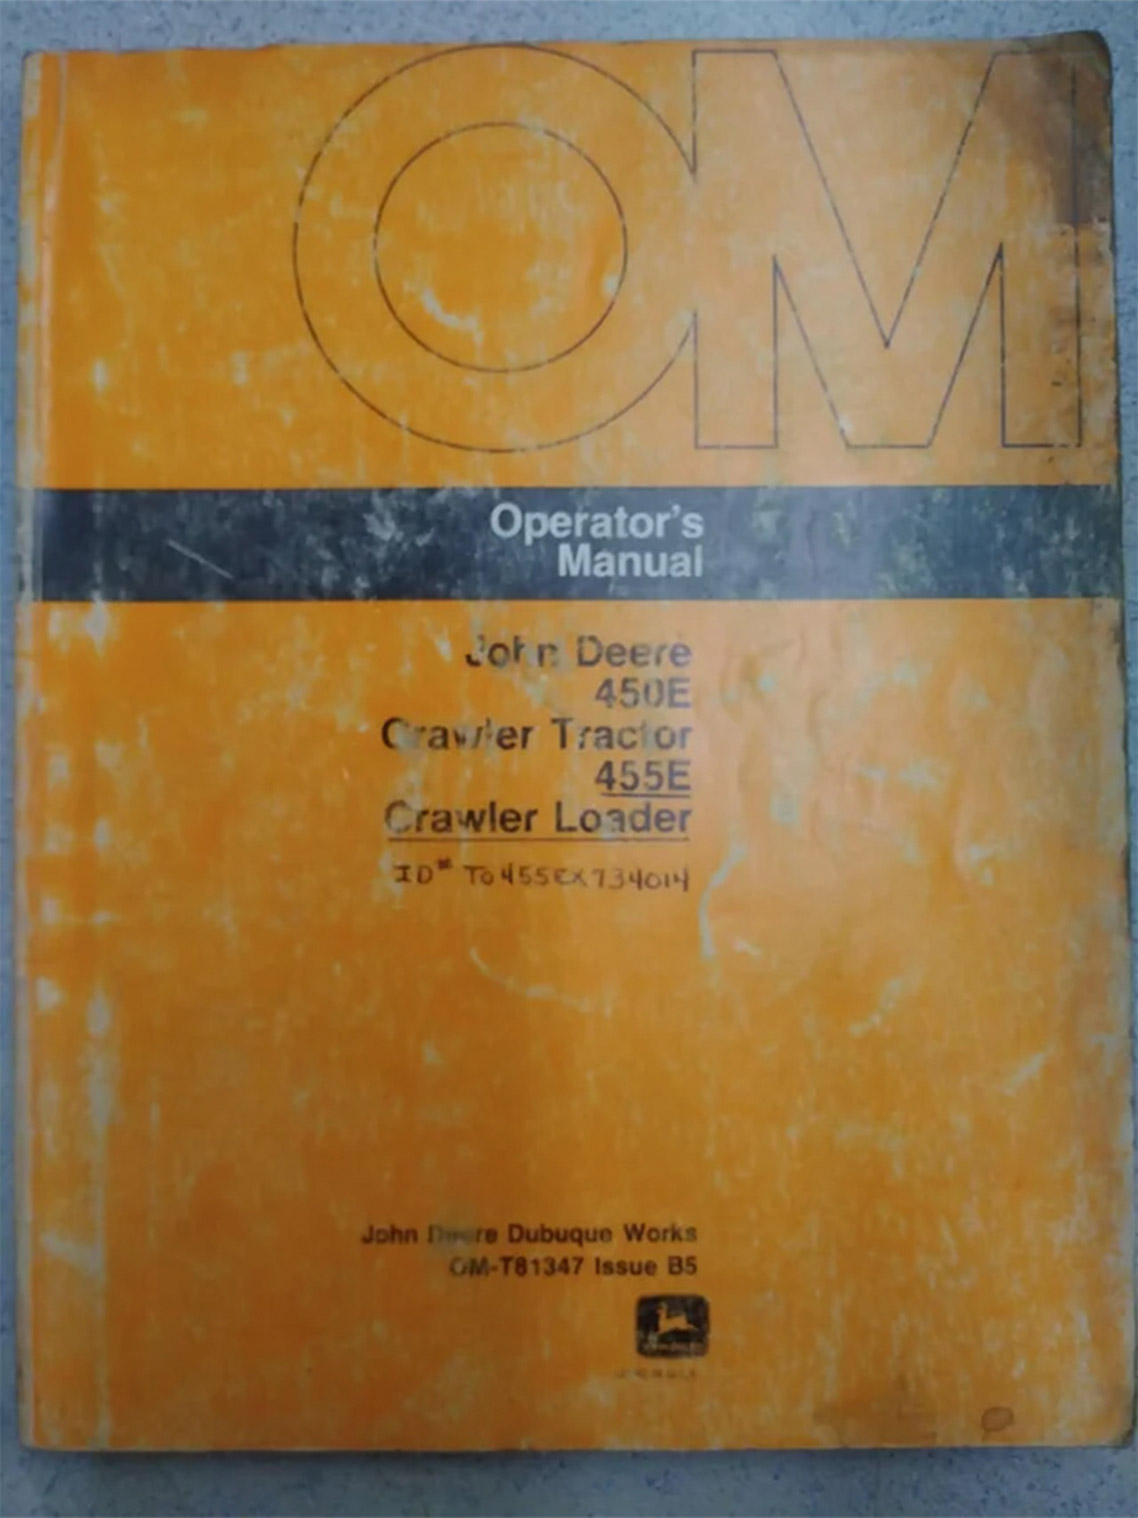 John Deere 450E and 455E Crawler Operator's Manual